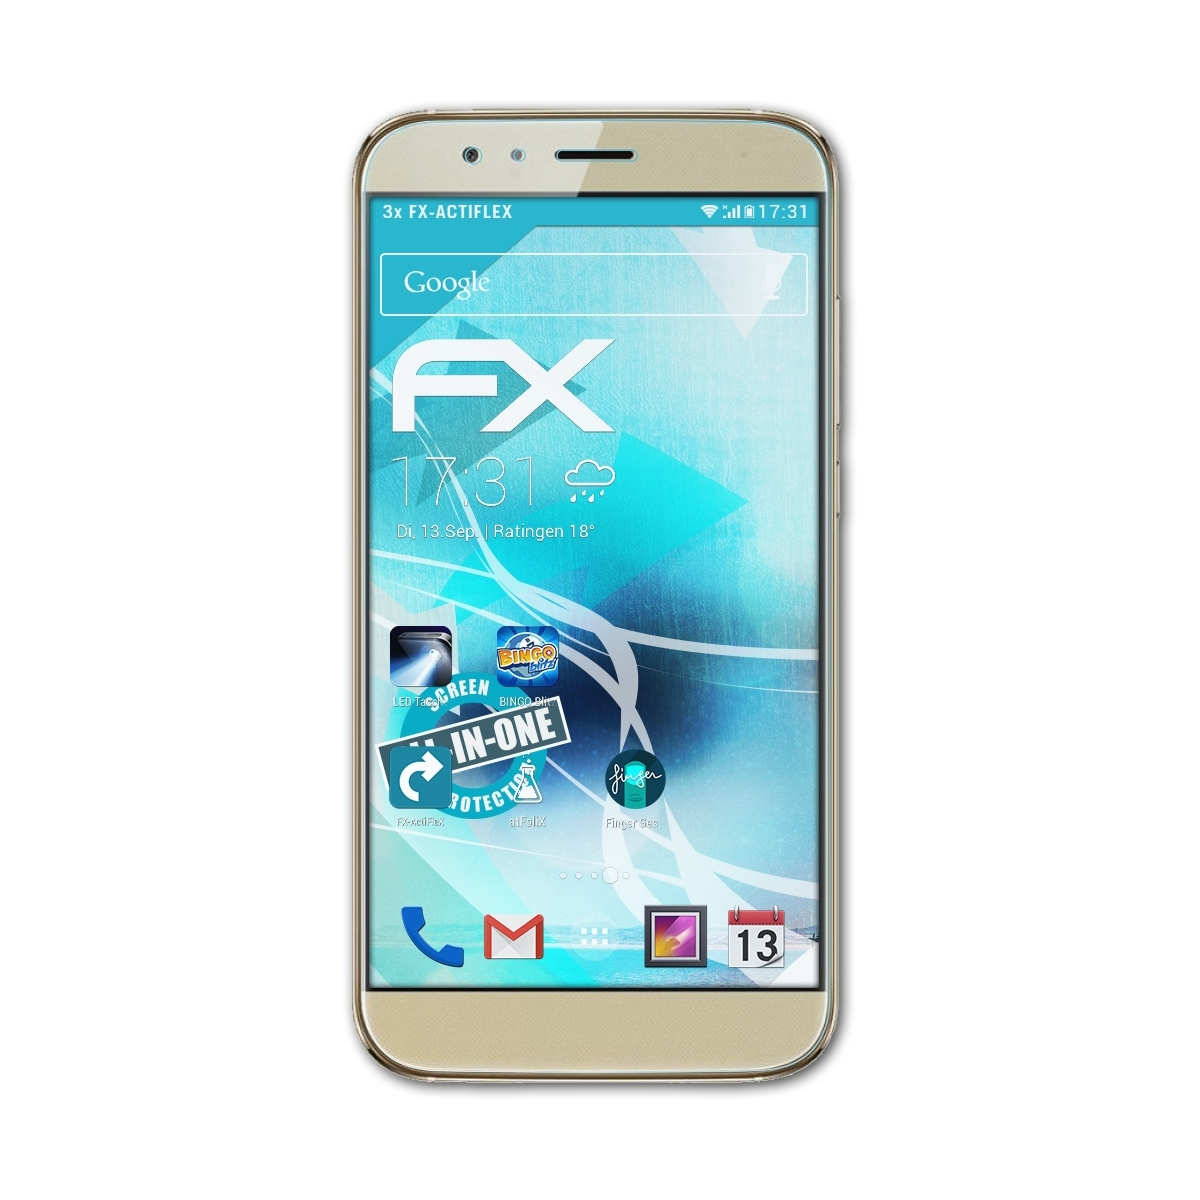 ATFOLIX 3x Huawei (GX8)) Displayschutz(für G8 FX-ActiFleX